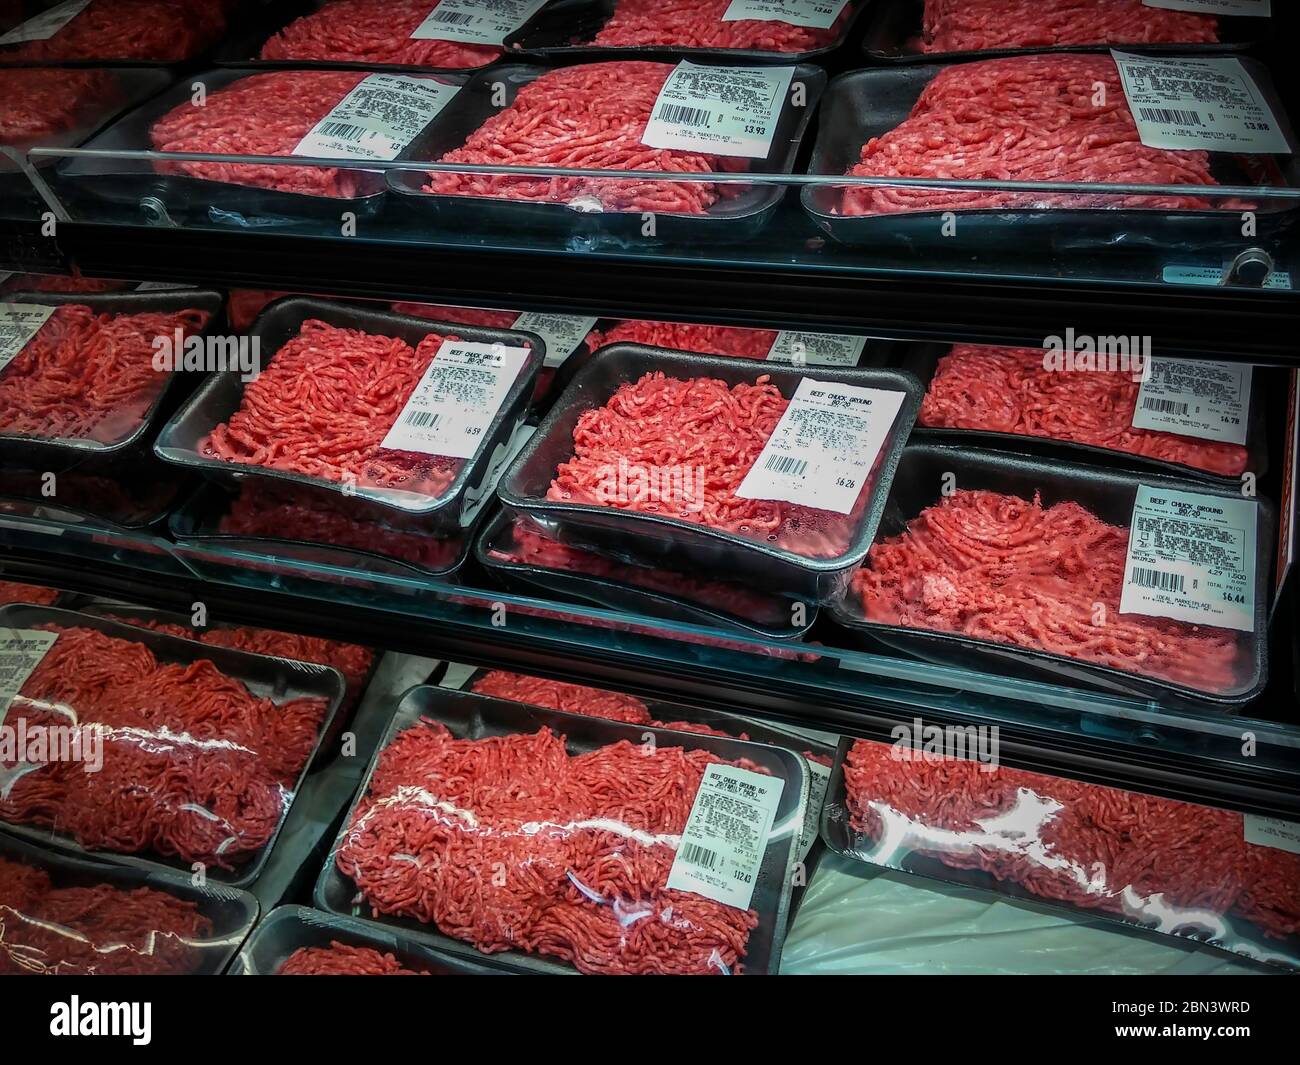 El engaño oculto de la carne picada: en qué tienes que fijarte al comprarla  en el supermercado